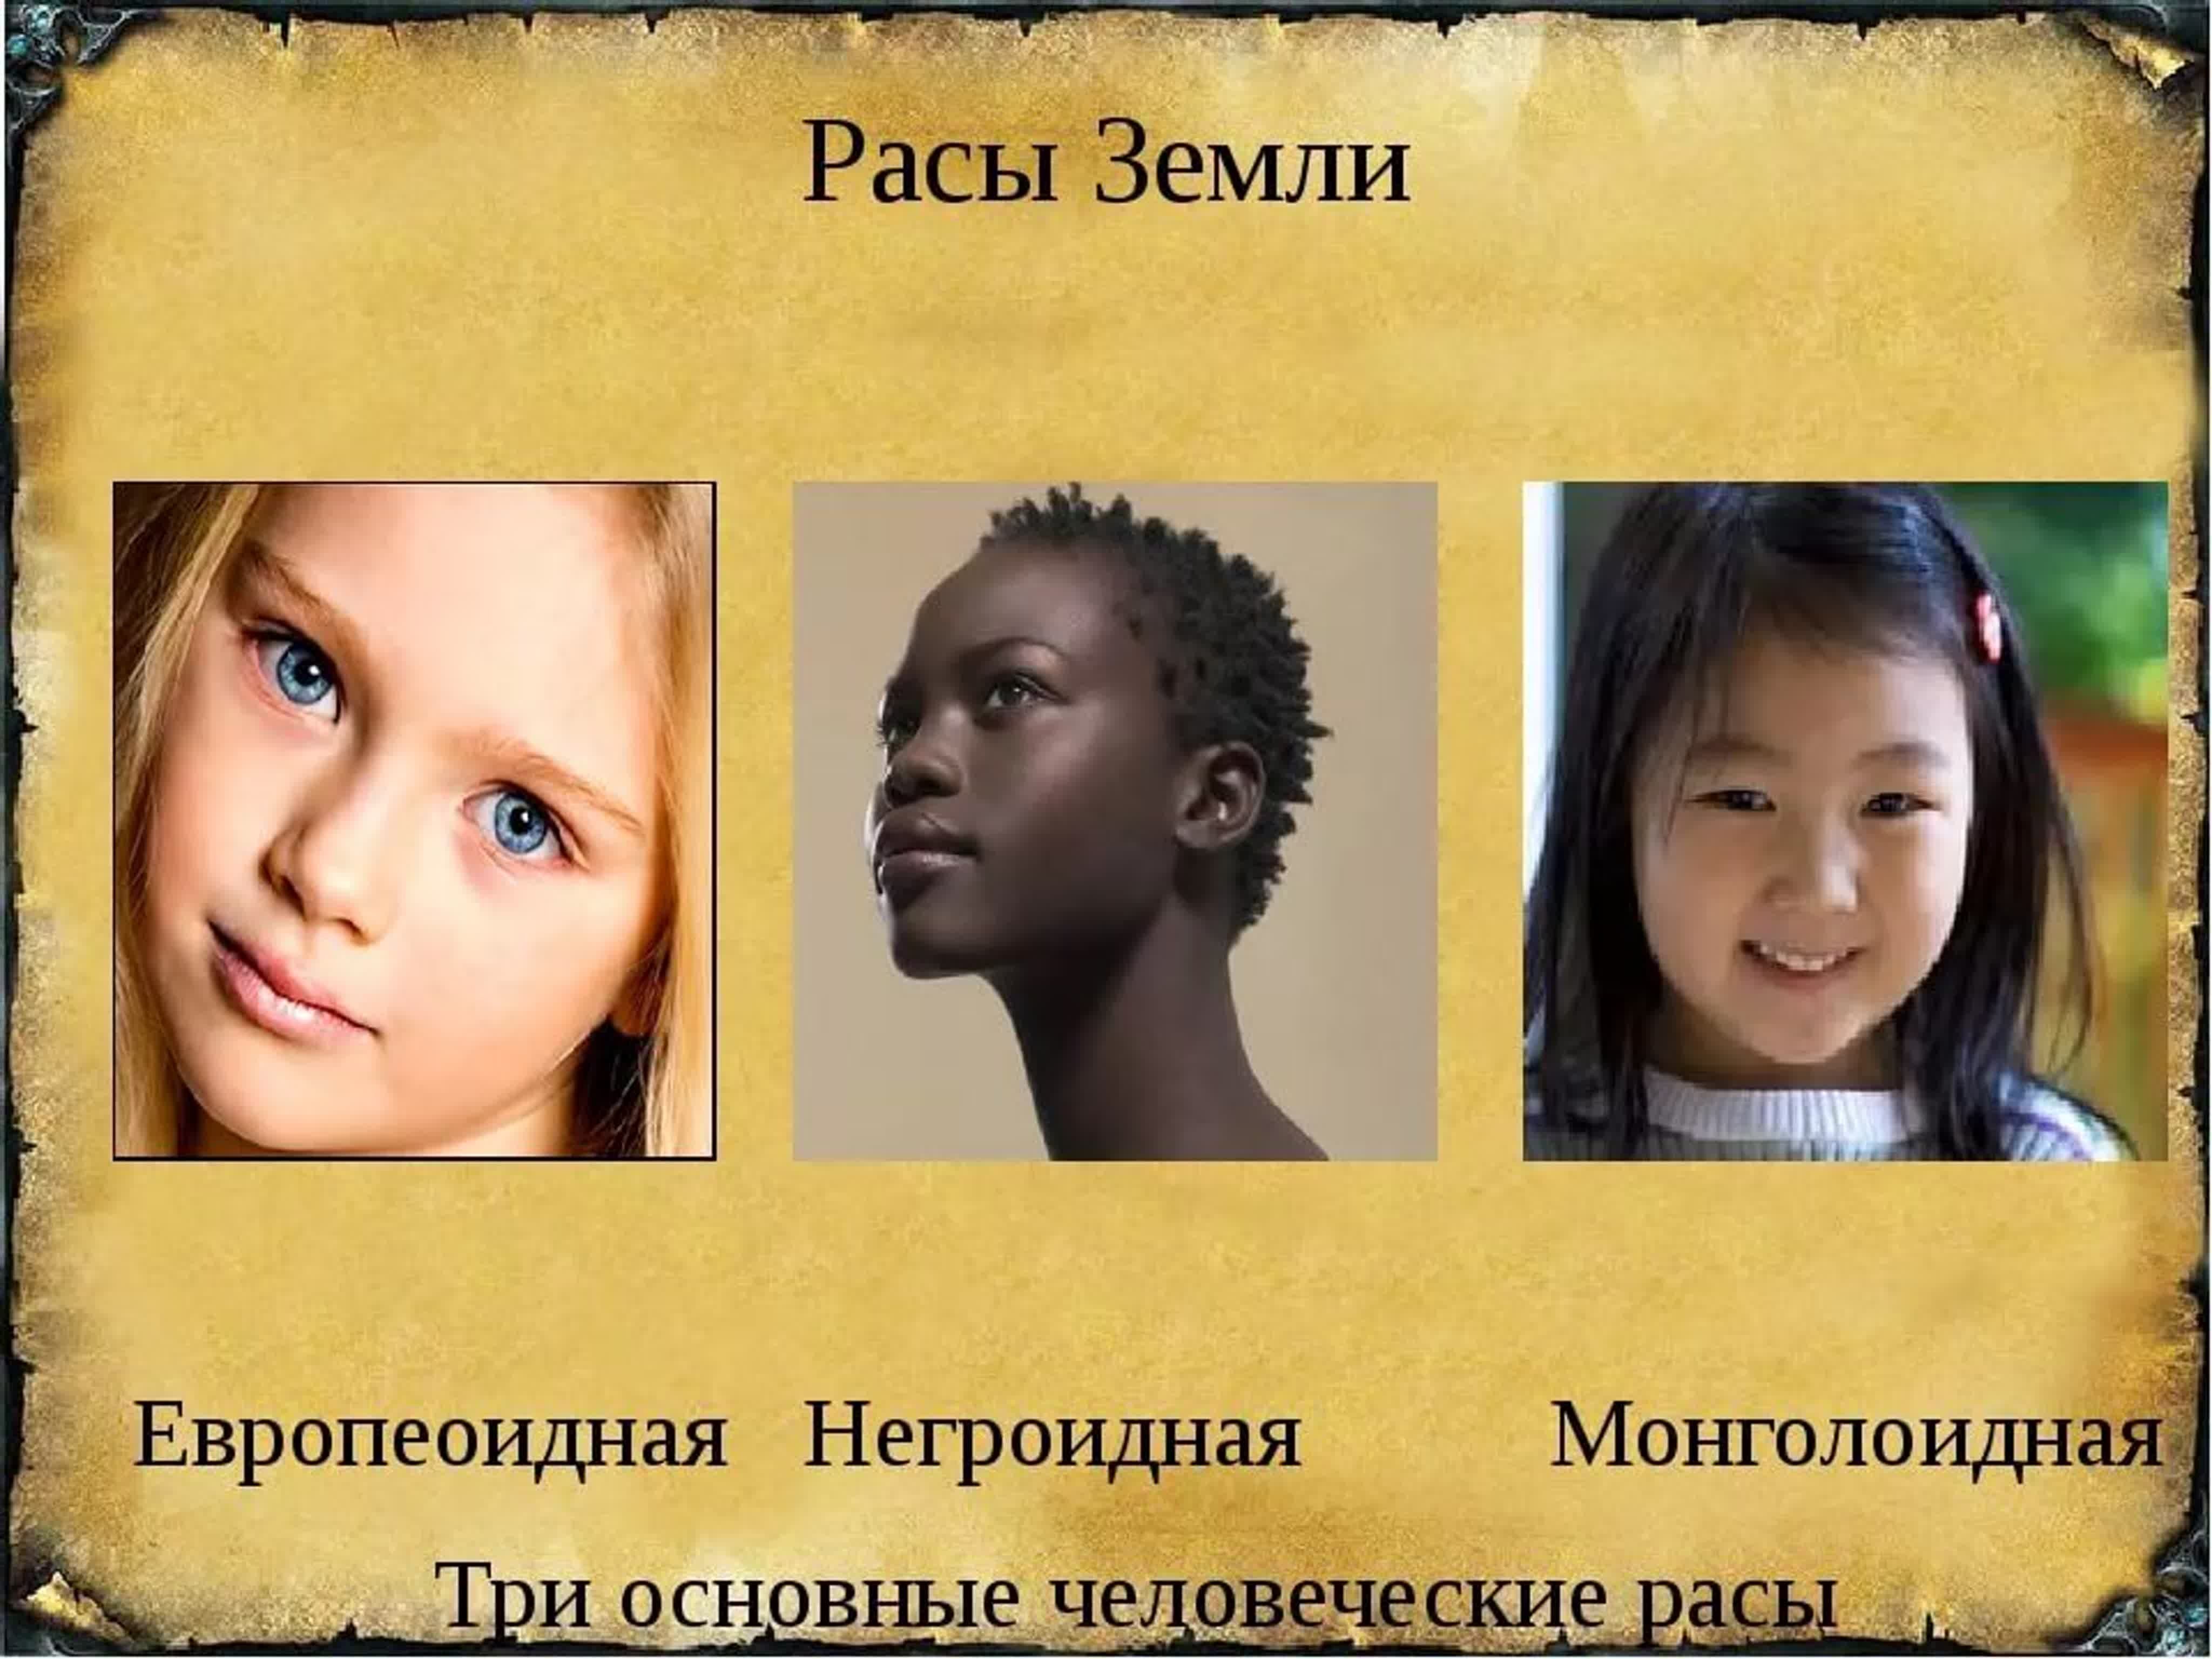 Примеры выдающихся людей разных рас